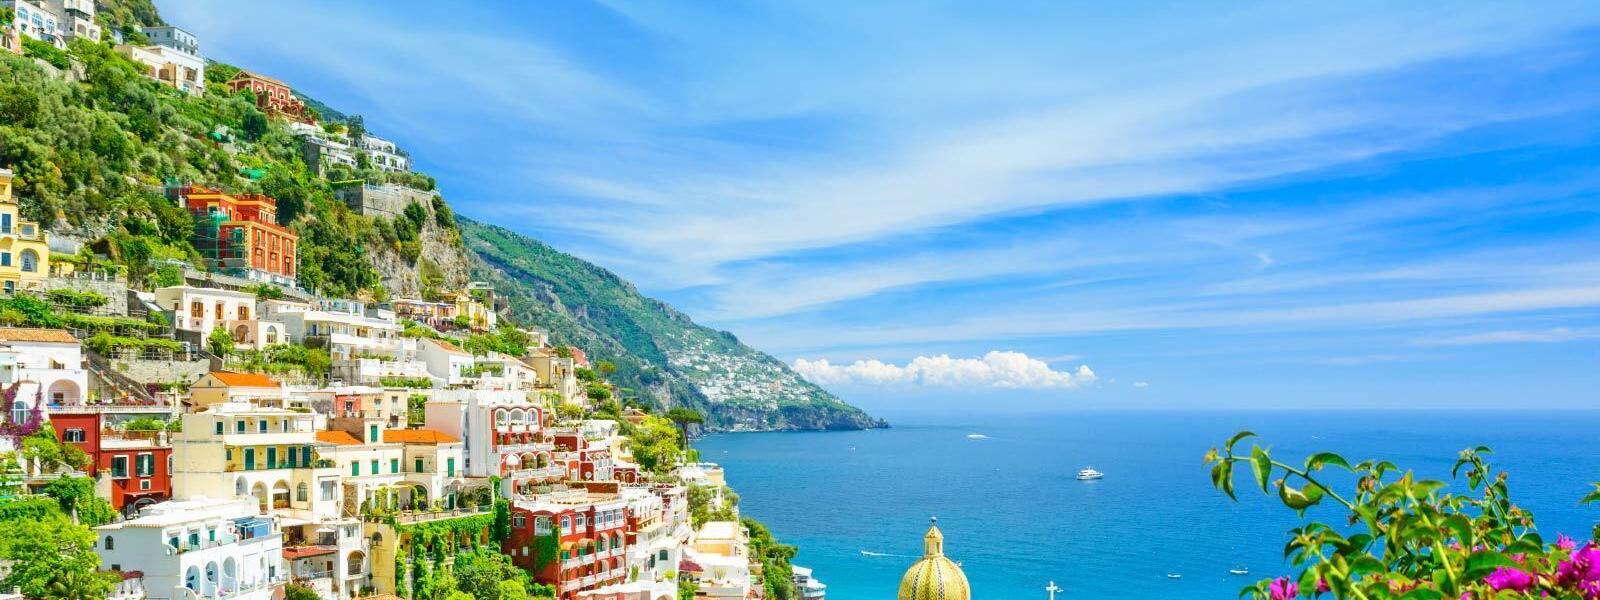 Luxus Ferienhäuser und Ferienwohnungen in Neapel - BELLEVUE Ferienhaus